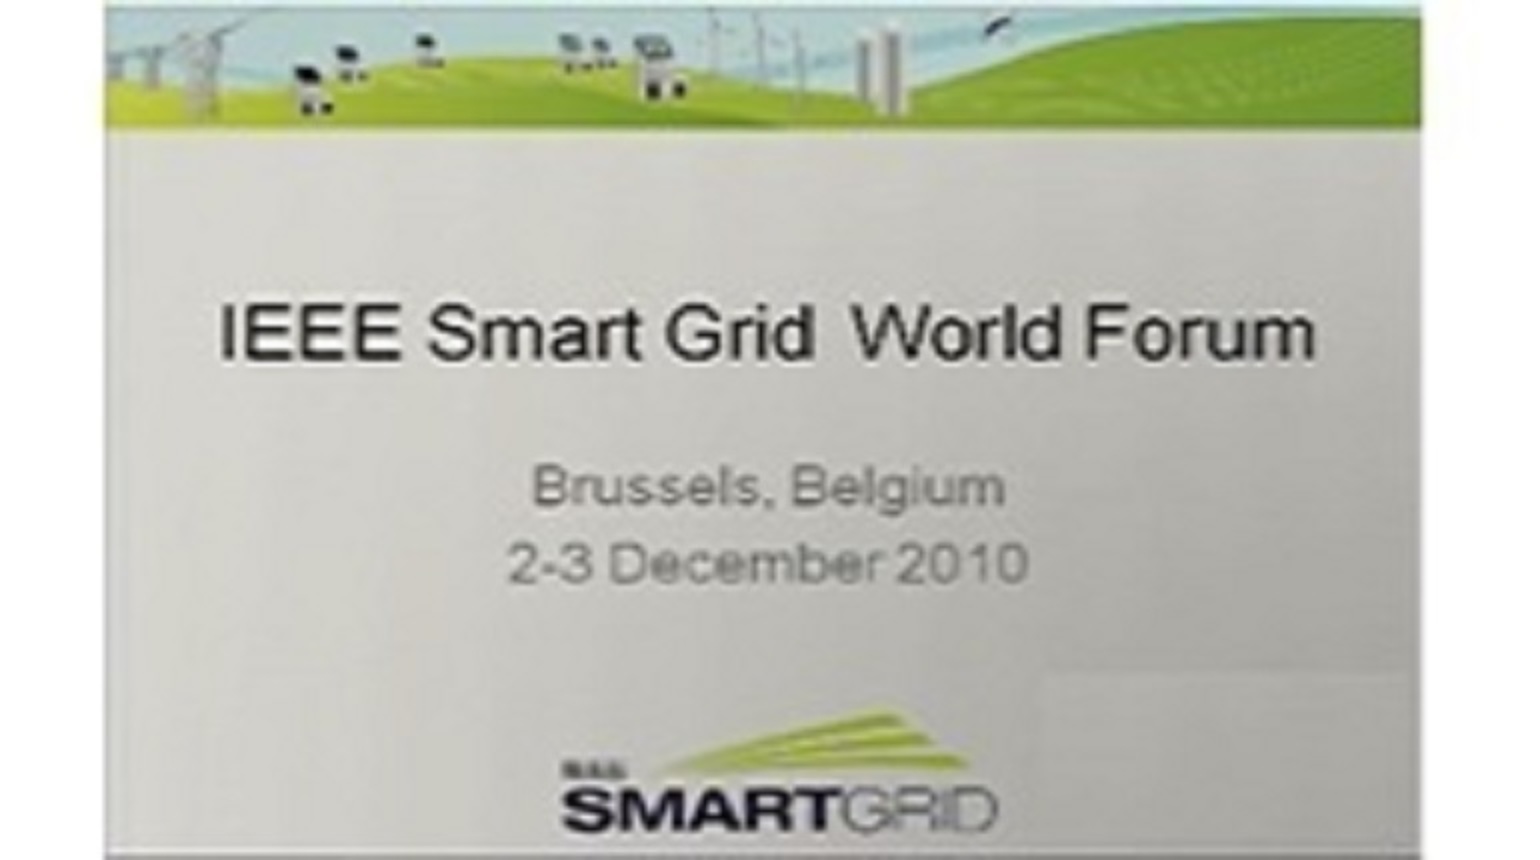 IEEE Smart Grid World Forum - Laurent Schmitt